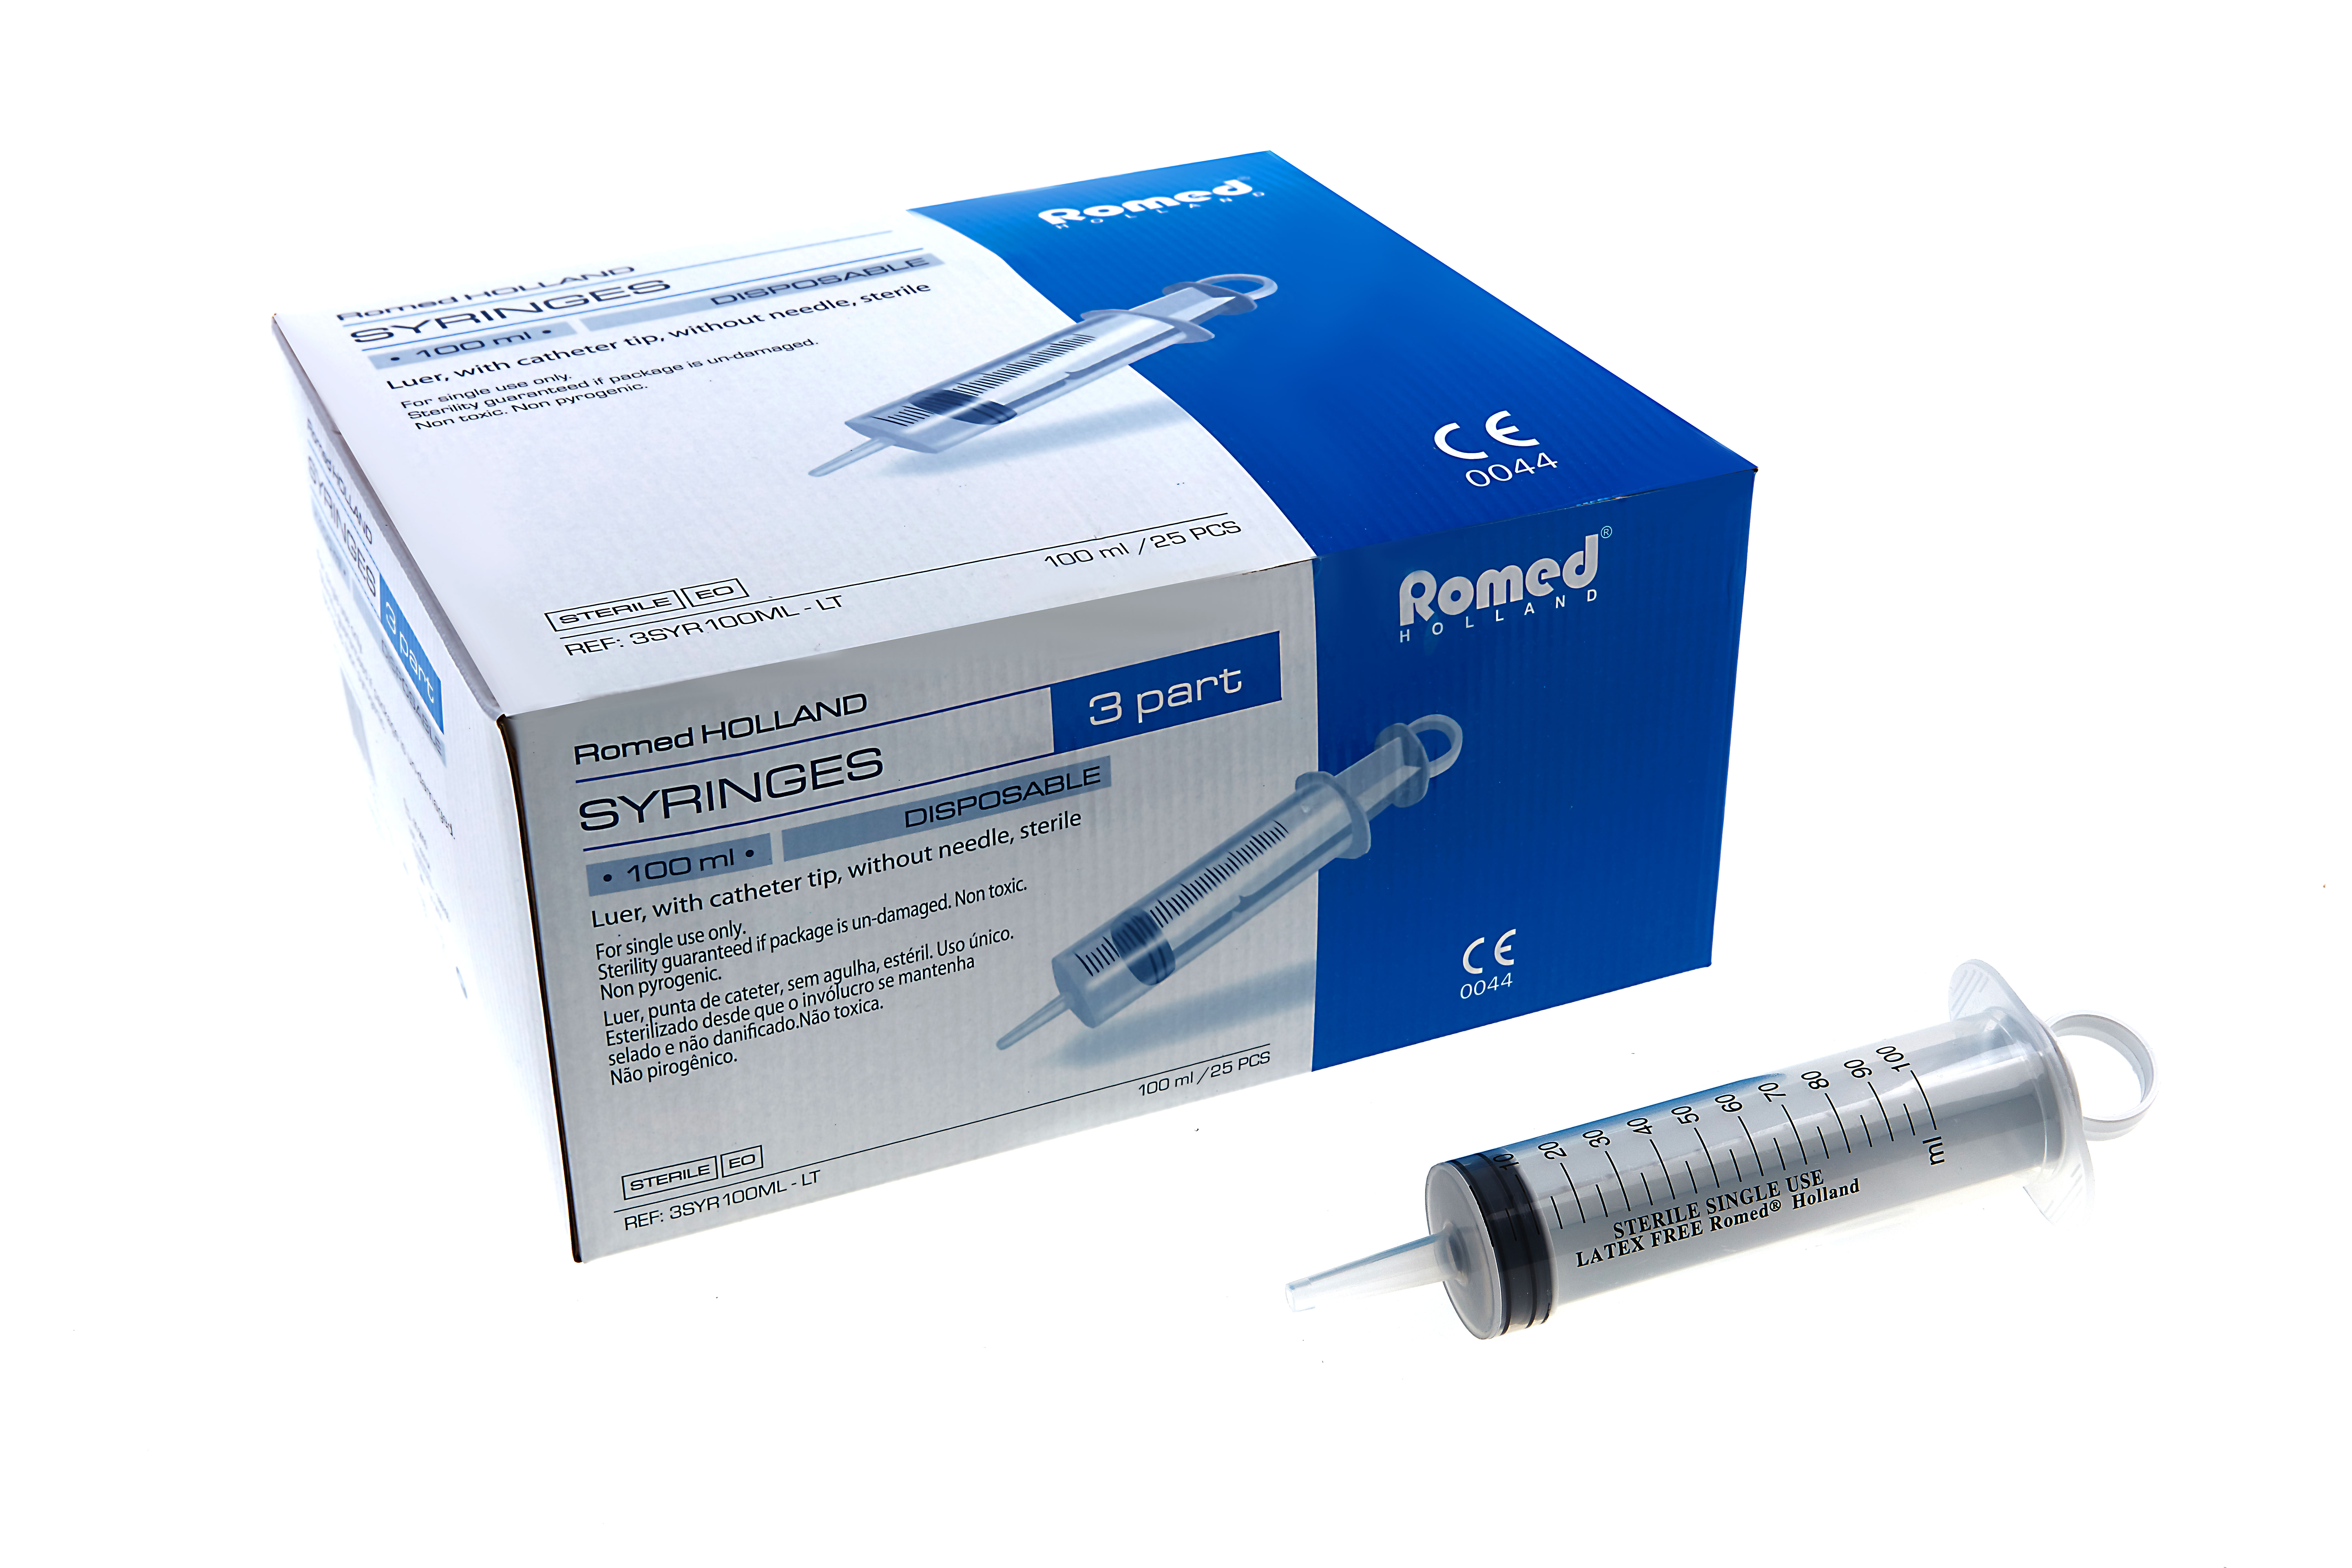 3SYR100ML-LT Romed 3-delige spuiten 100 ml, zonder naald, catheter tip, per stuk steriel verpakt, per 25 stuks in binnendoosje, 4 x 25 stuks = 100 stuks in een karton.